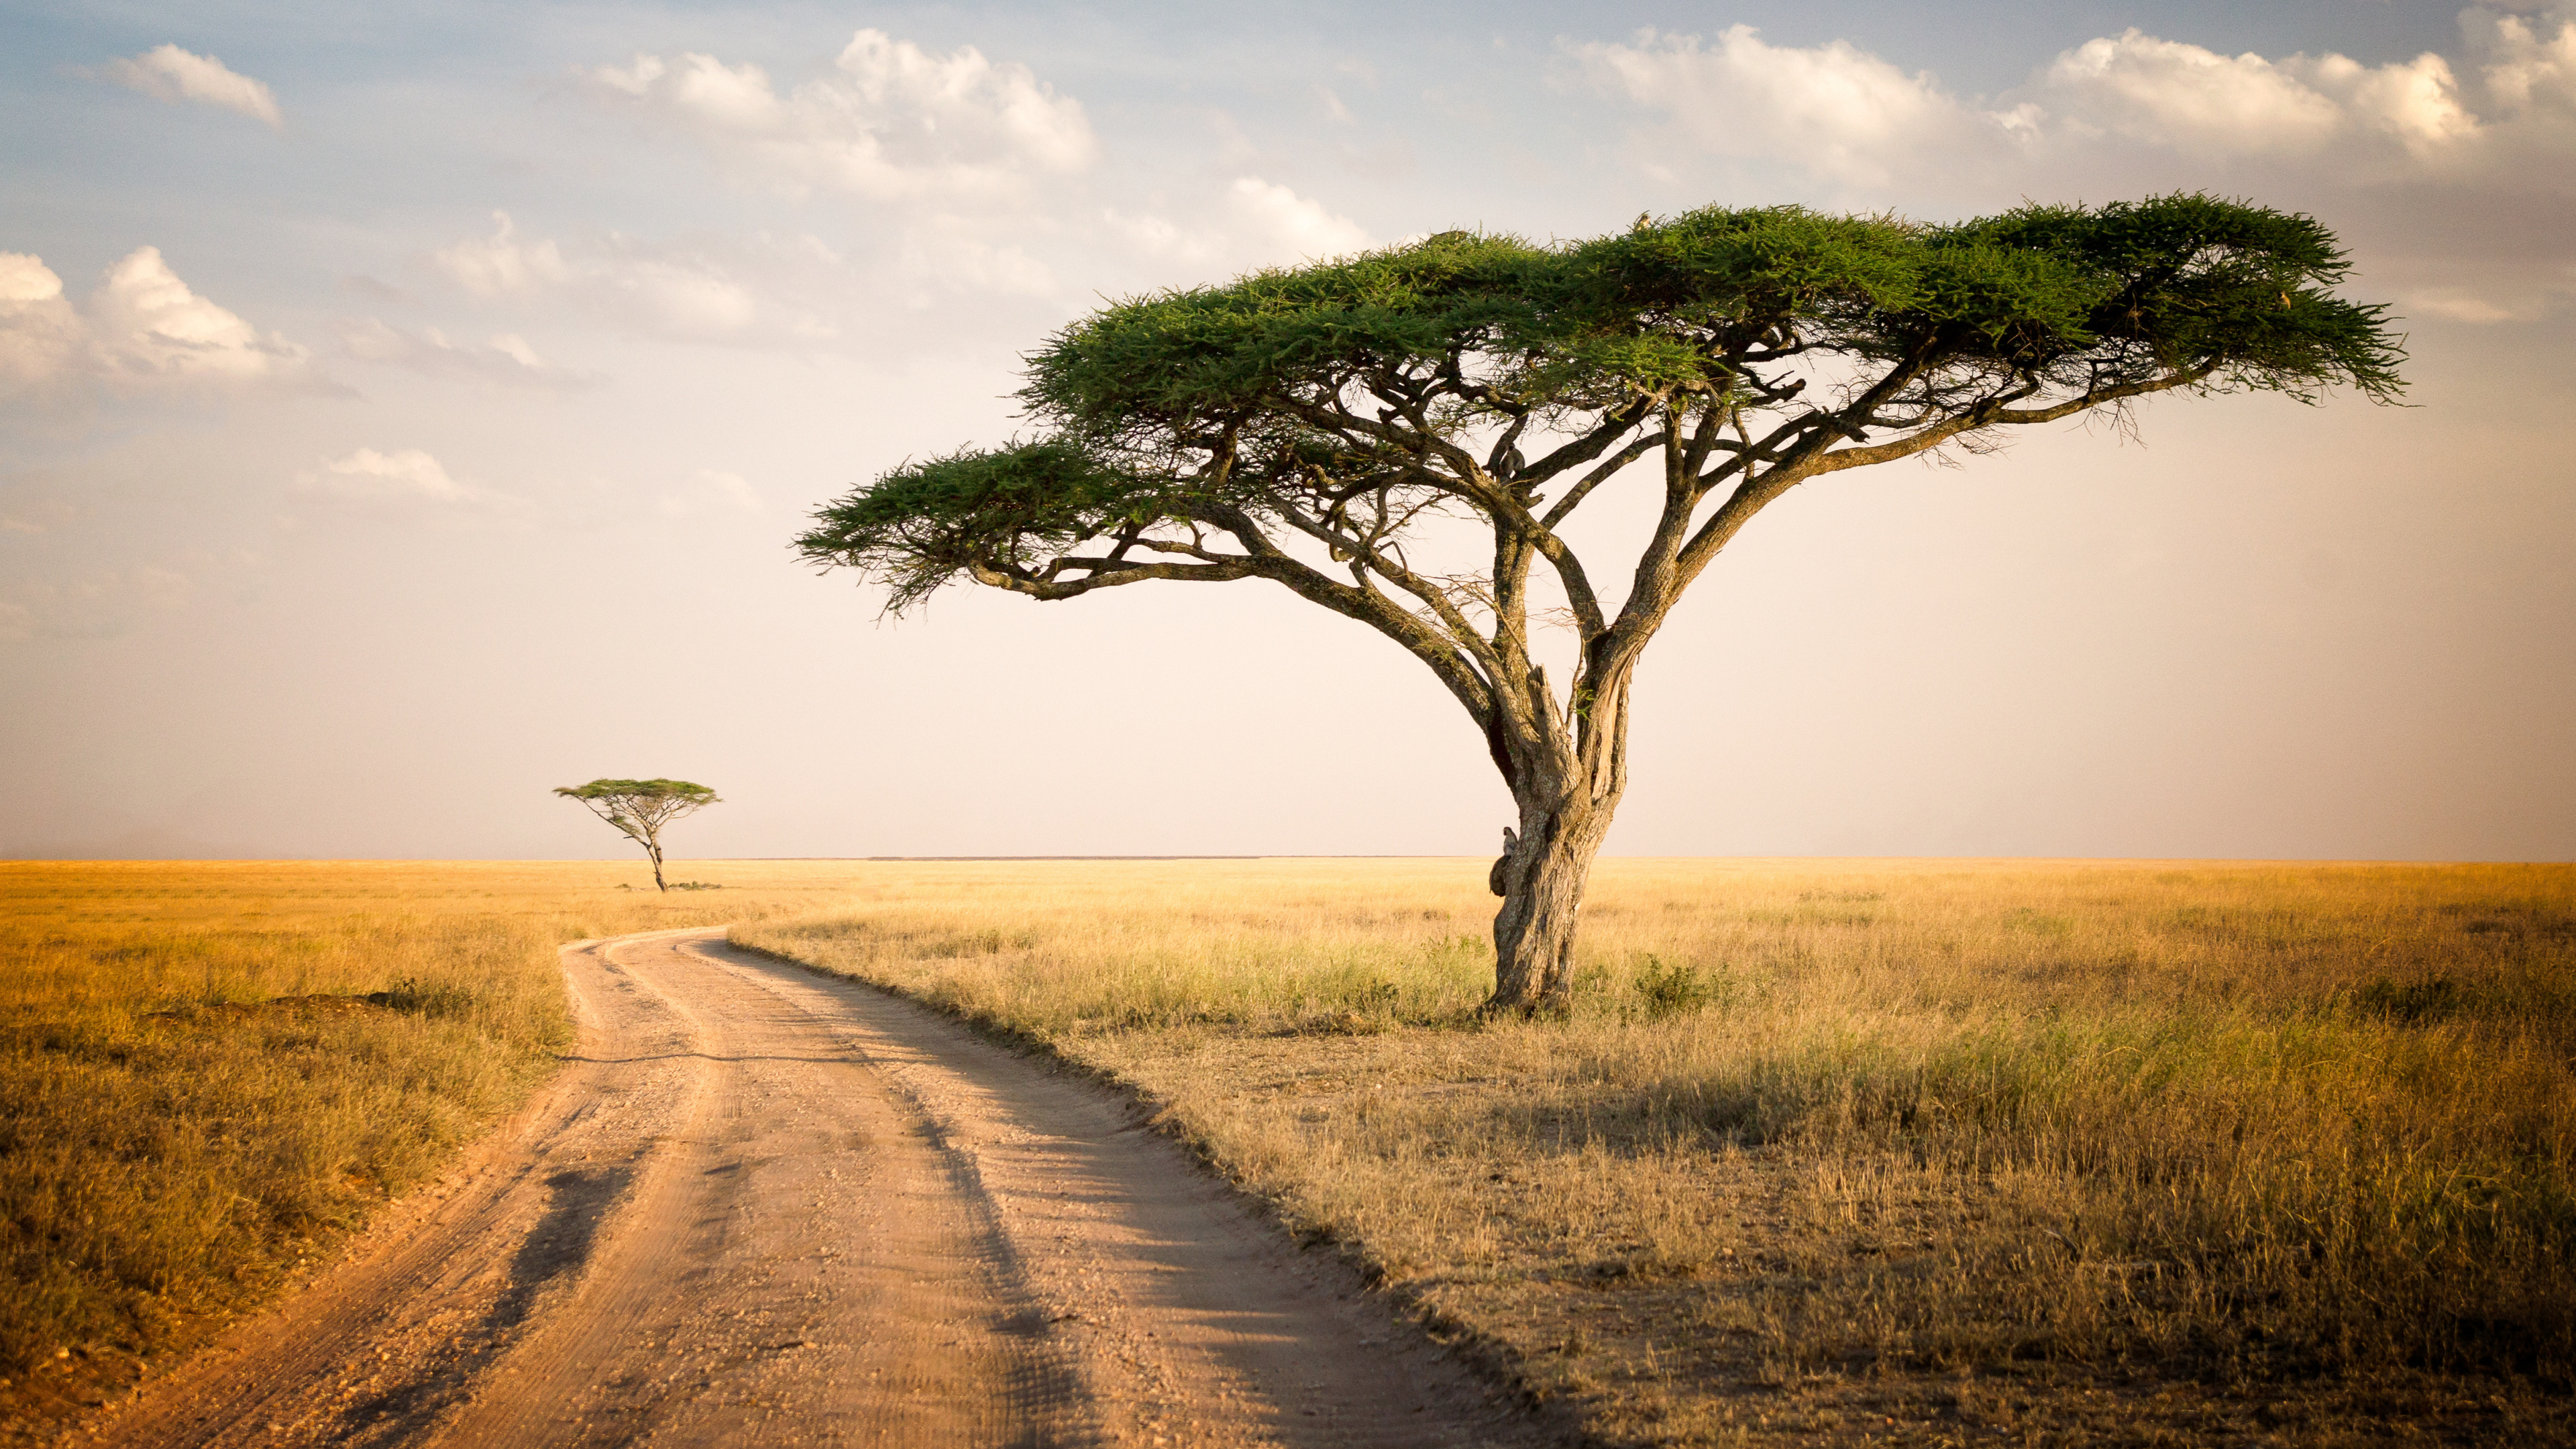 Africa, Forest landscape, National park scenery, 4K wallpaper, 3840x2160 4K Desktop